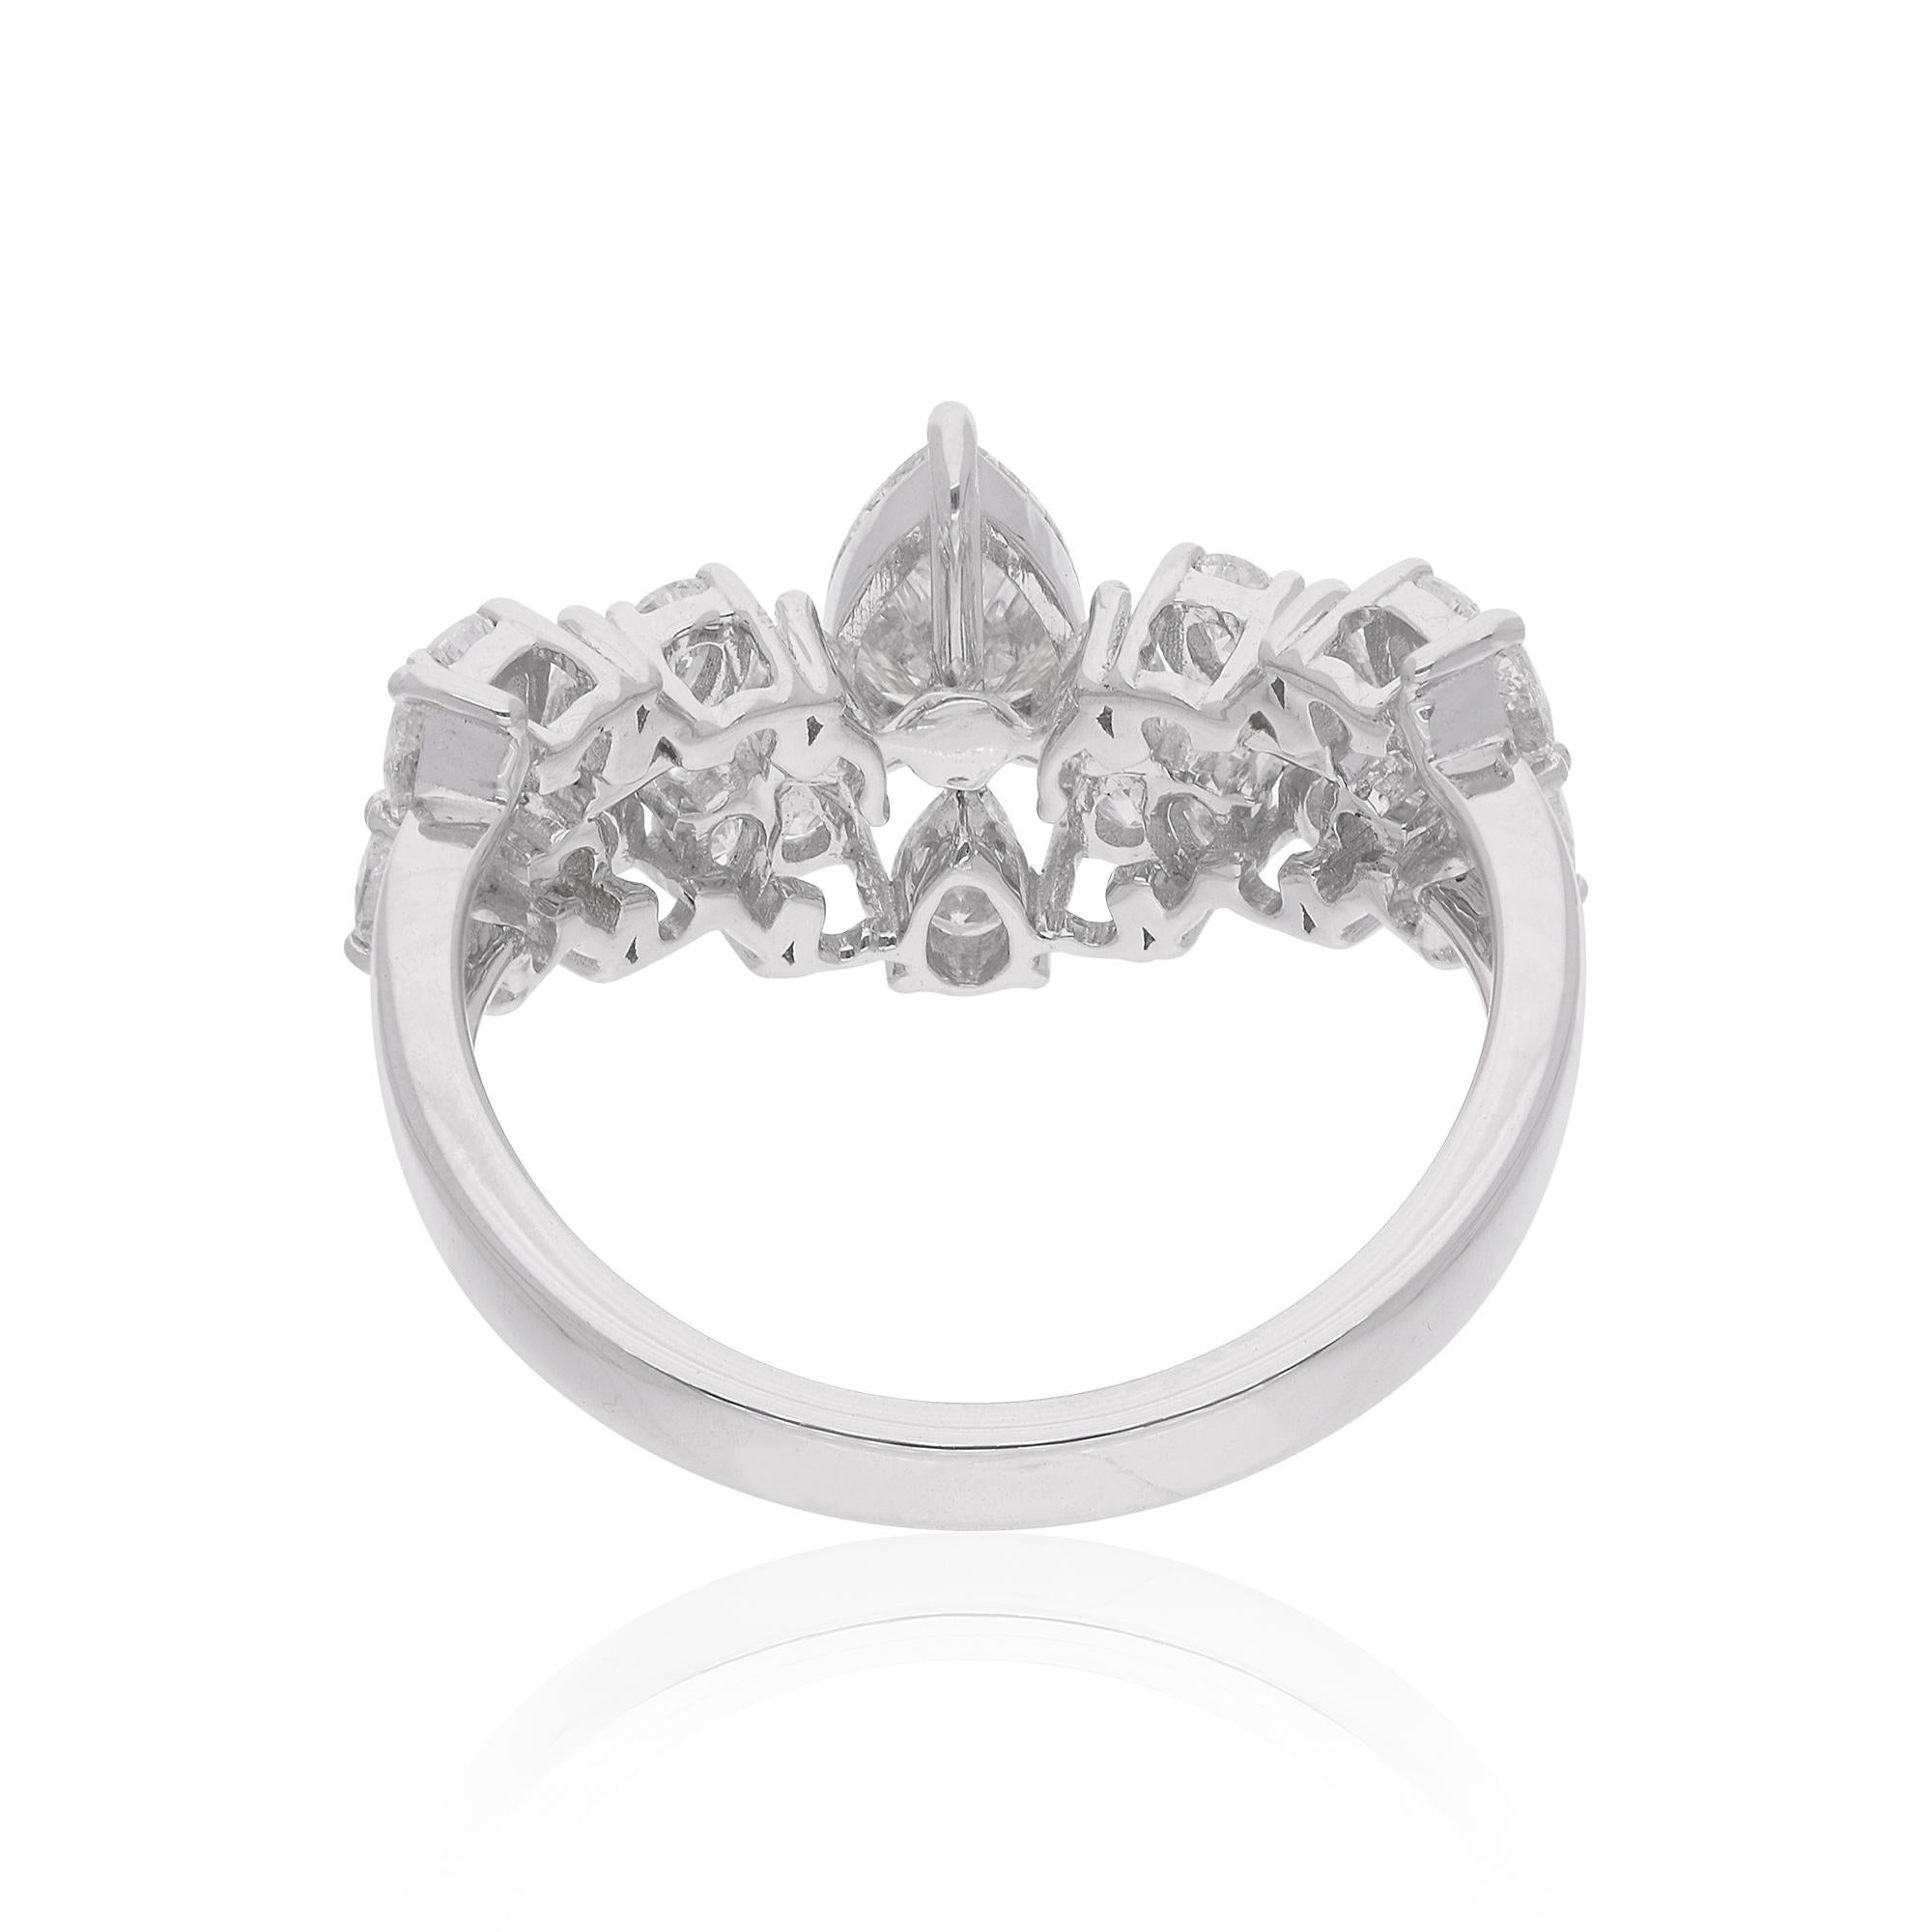 Lassen Sie sich von zeitloser Eleganz verführen mit diesem atemberaubenden 1,61 ct. Birne Diamant Chevron Design Ring, sorgfältig in 14 Karat Weißgold gefertigt. Mit Präzision und Leidenschaft handgefertigt, ist dieses exquisite Schmuckstück ein